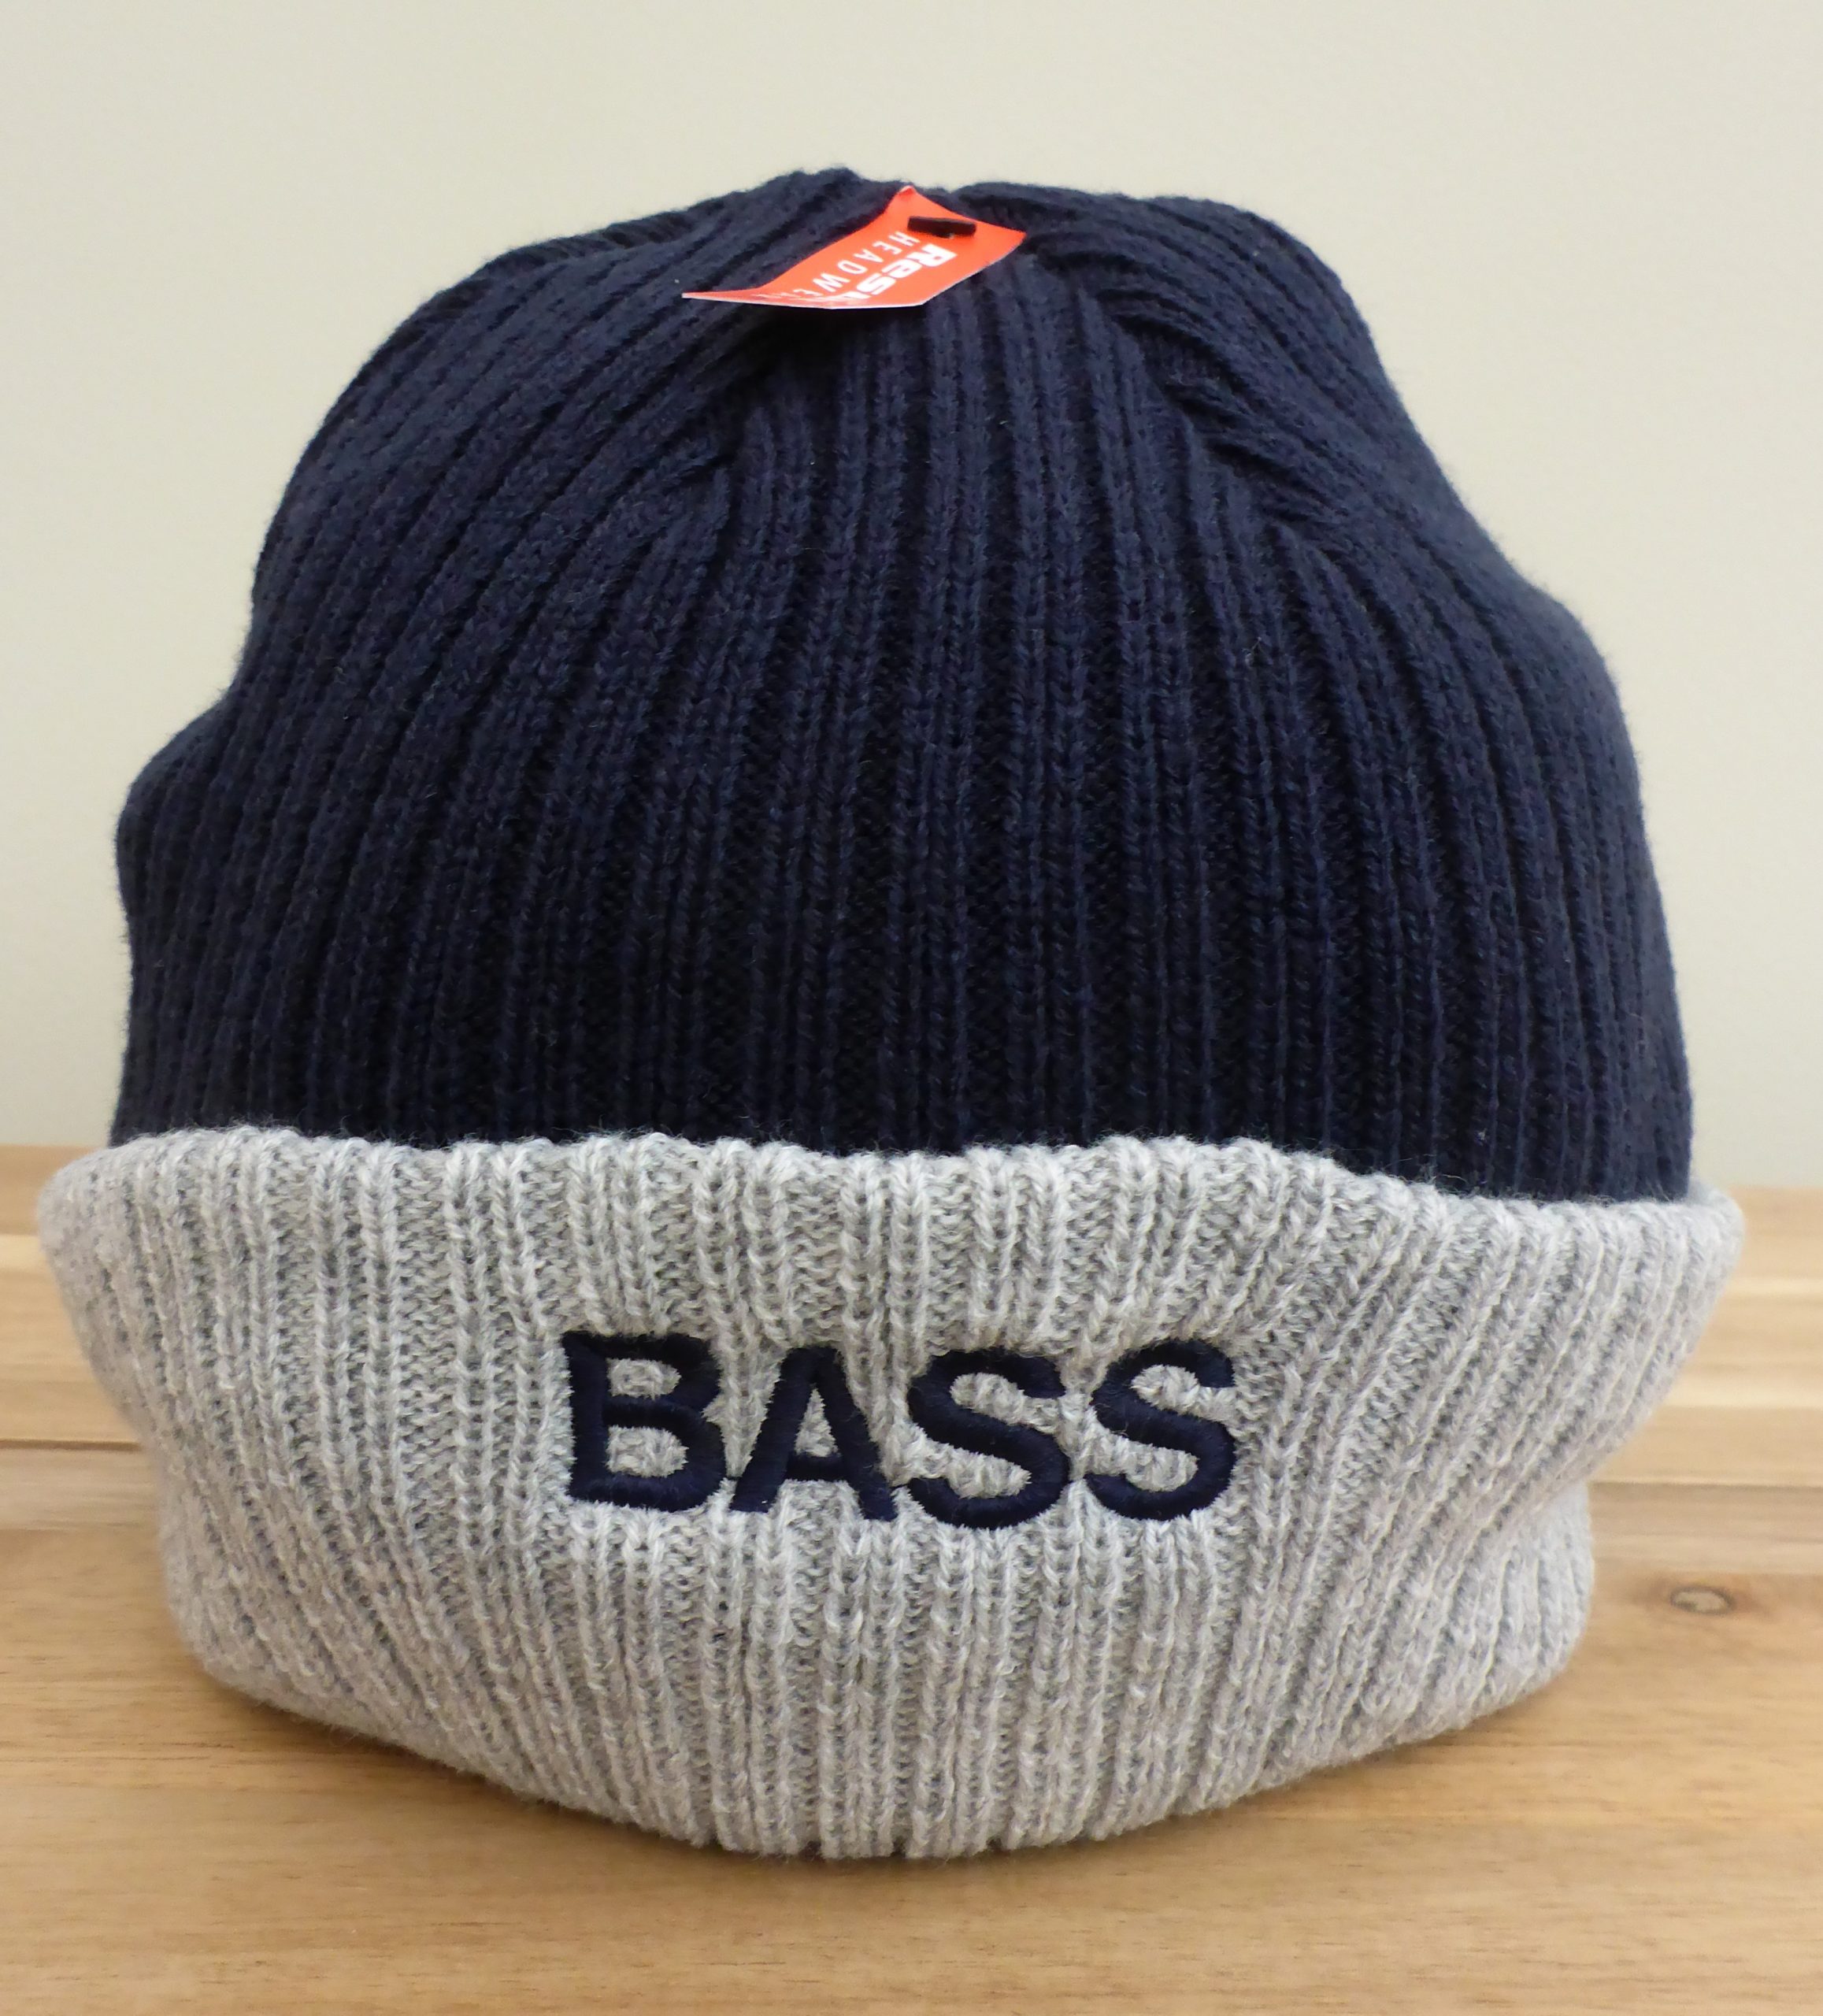 https://www.ukbass.com/wp-content/uploads/2019/03/bass-hat-scaled.jpg